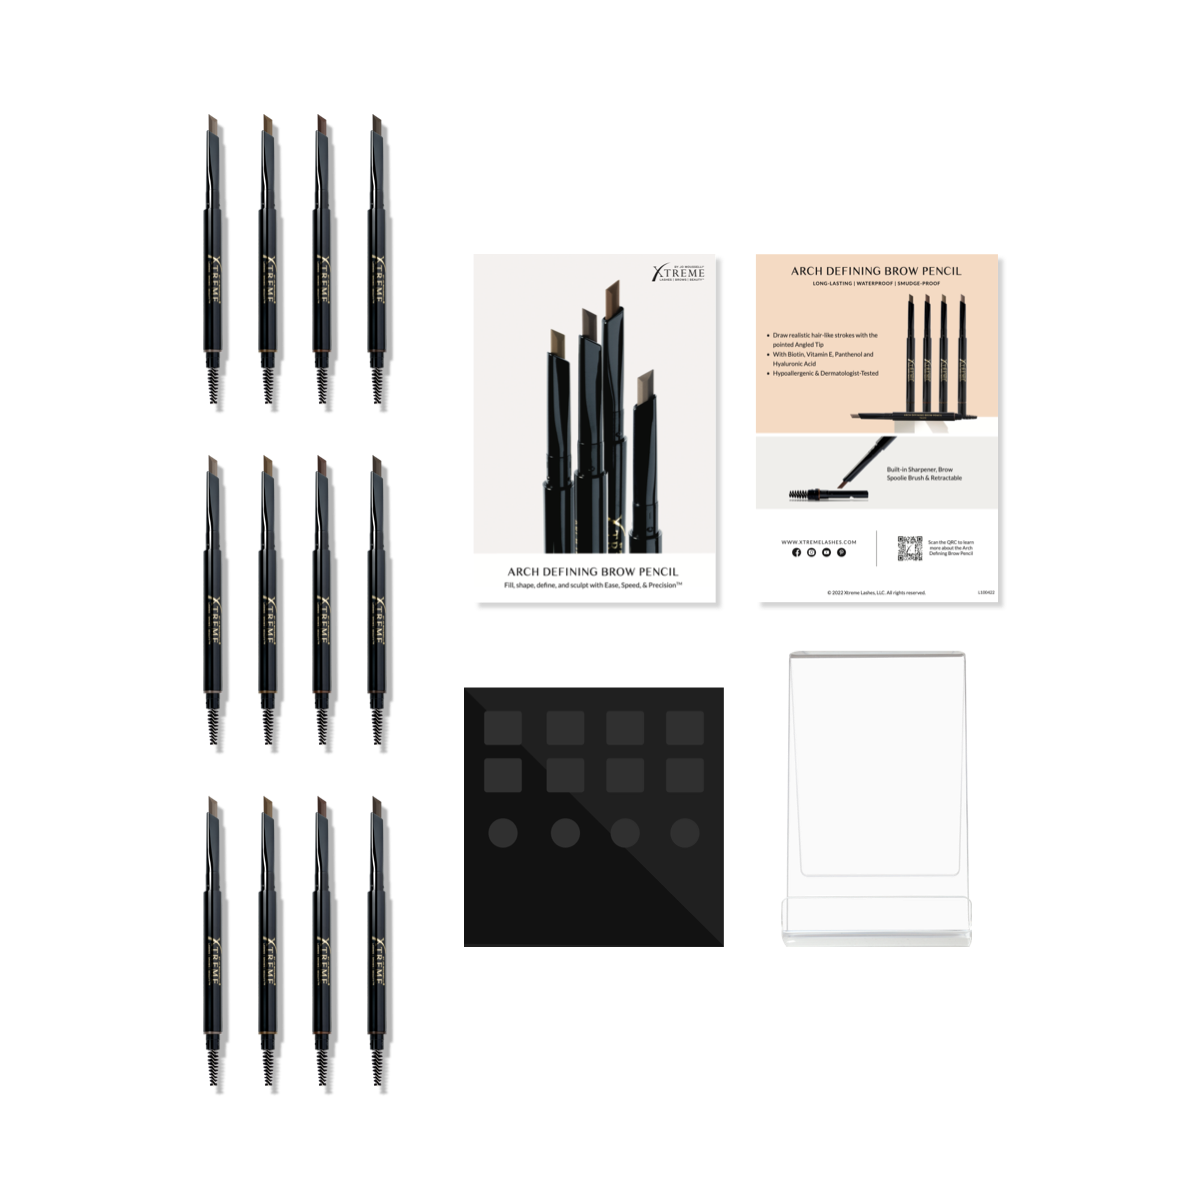 Jeweils 3 Stück der vier Farbe des augenrbrauen Stift mit einem Display in schwarz und Werbetafel